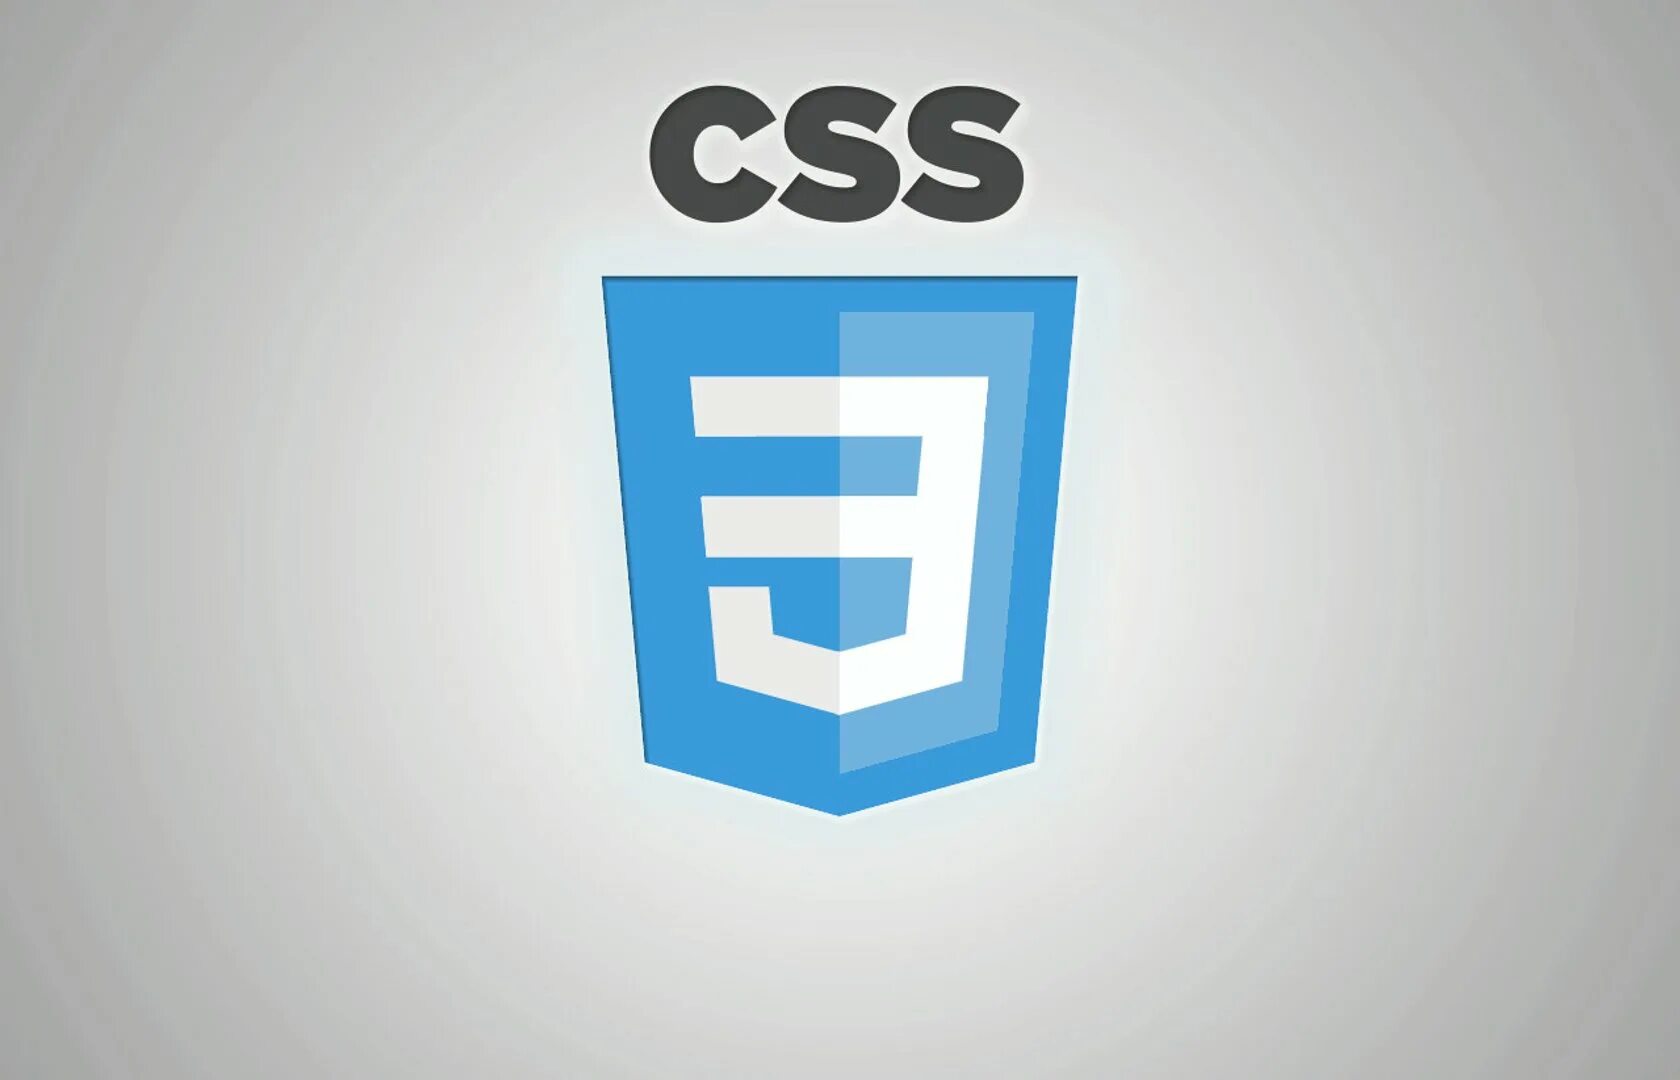 Css3 логотип. Значок css3. CSS эмблема. CSS лого. Css зависимости